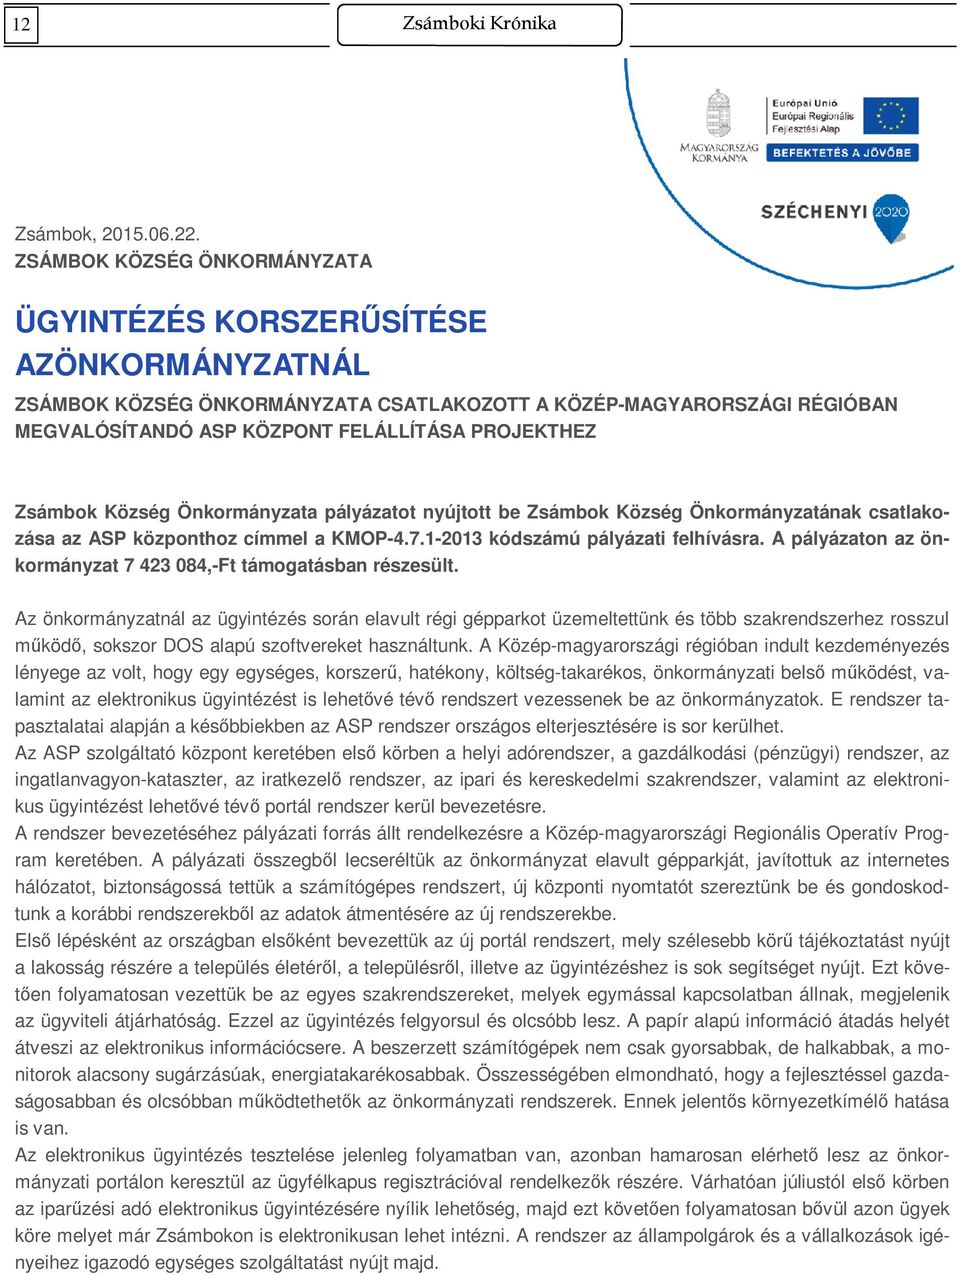 Zsámbok Község Önkormányzata pályázatot nyújtott be Zsámbok Község Önkormányzatának csatlakozása az ASP központhoz címmel a KMOP-4.7.1-2013 kódszámú pályázati felhívásra.